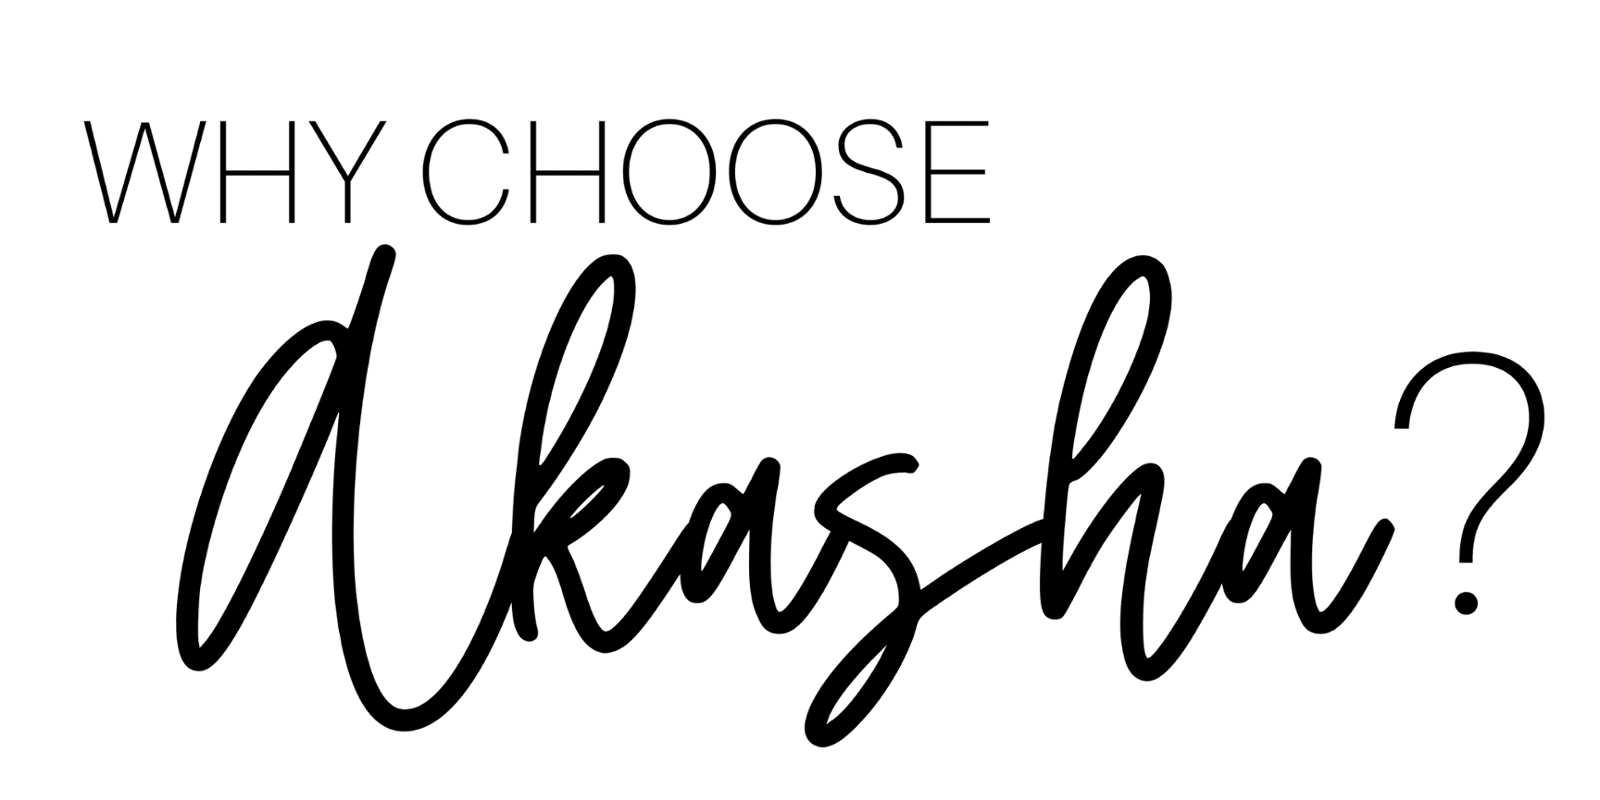 Why Choose Akasha?